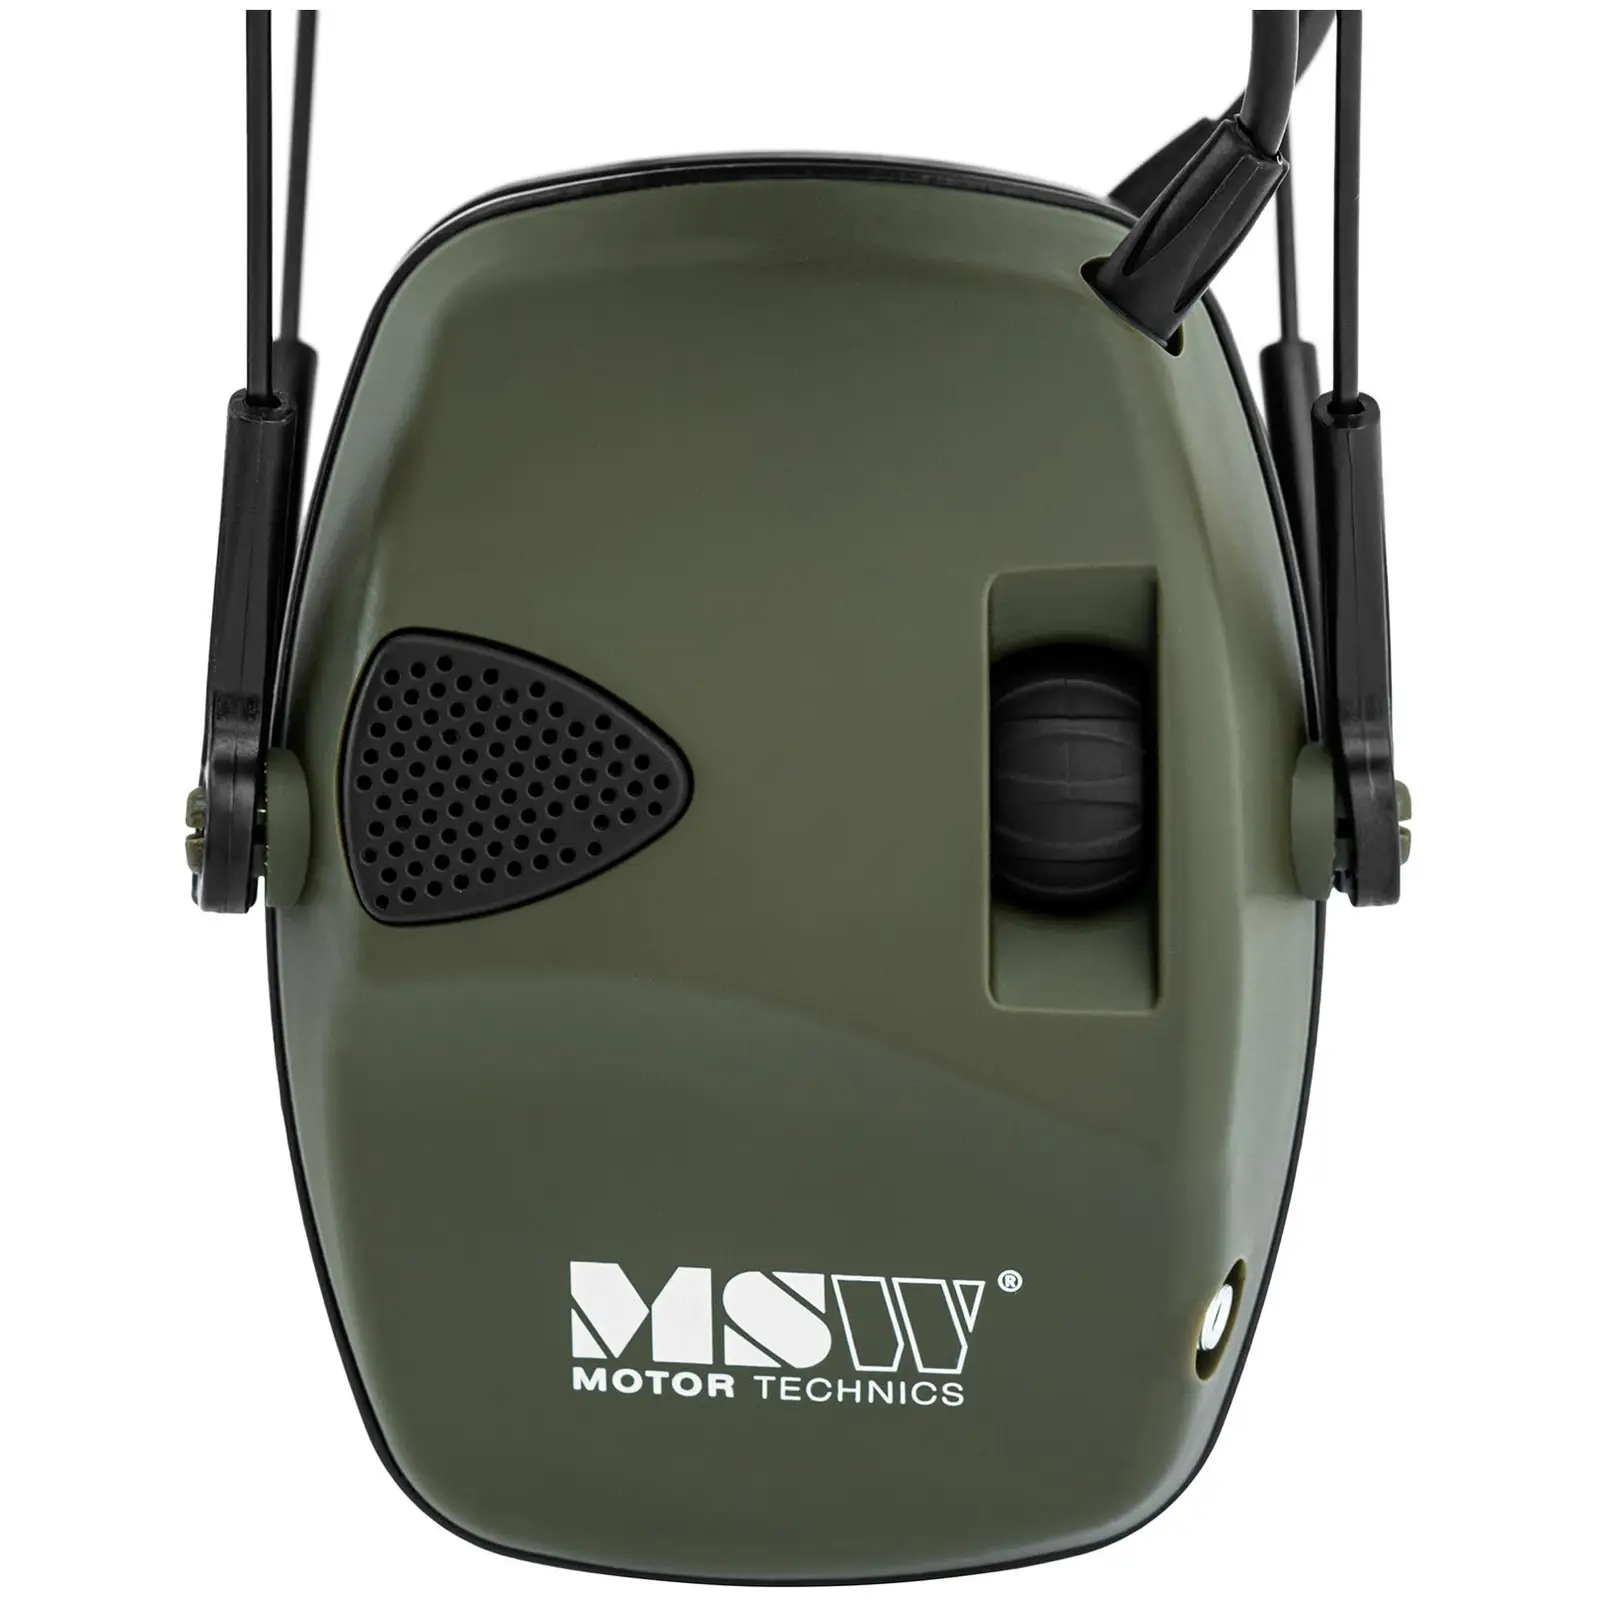 Støyreduserende hodetelefoner - dynamisk ekstern støykontroll - grønn